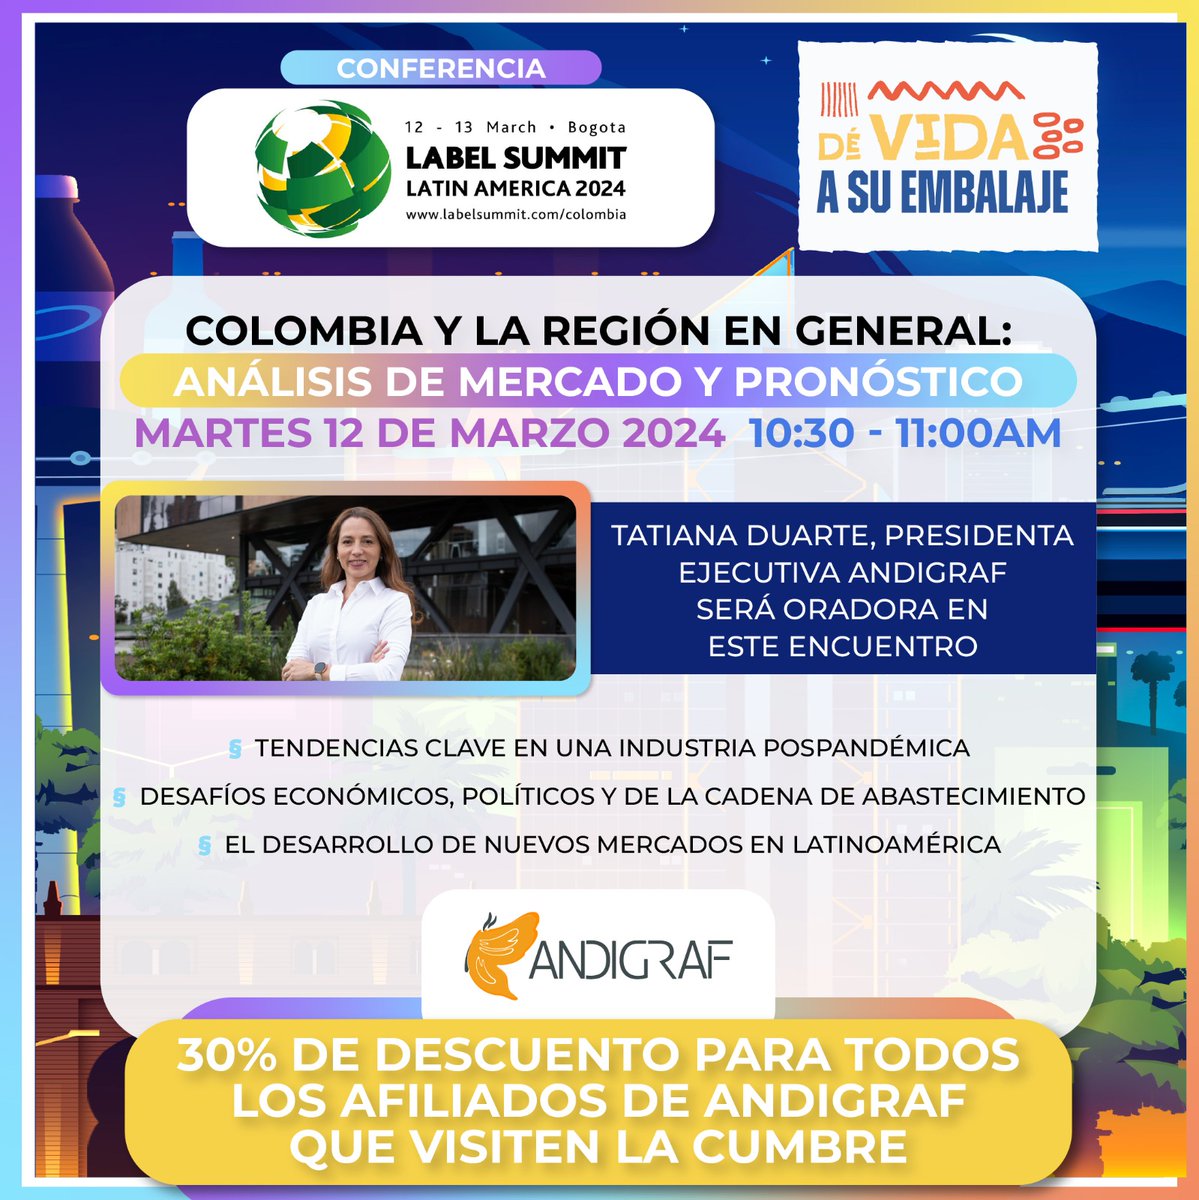 Acompáñanos este 12 de marzo en @Labelexpo LABEL SUMMIT , Tatiana Duarte Presidenta Ejecutiva de Andigraf será oradora en este gran encuentro de networking, educación y exhibición de productos.